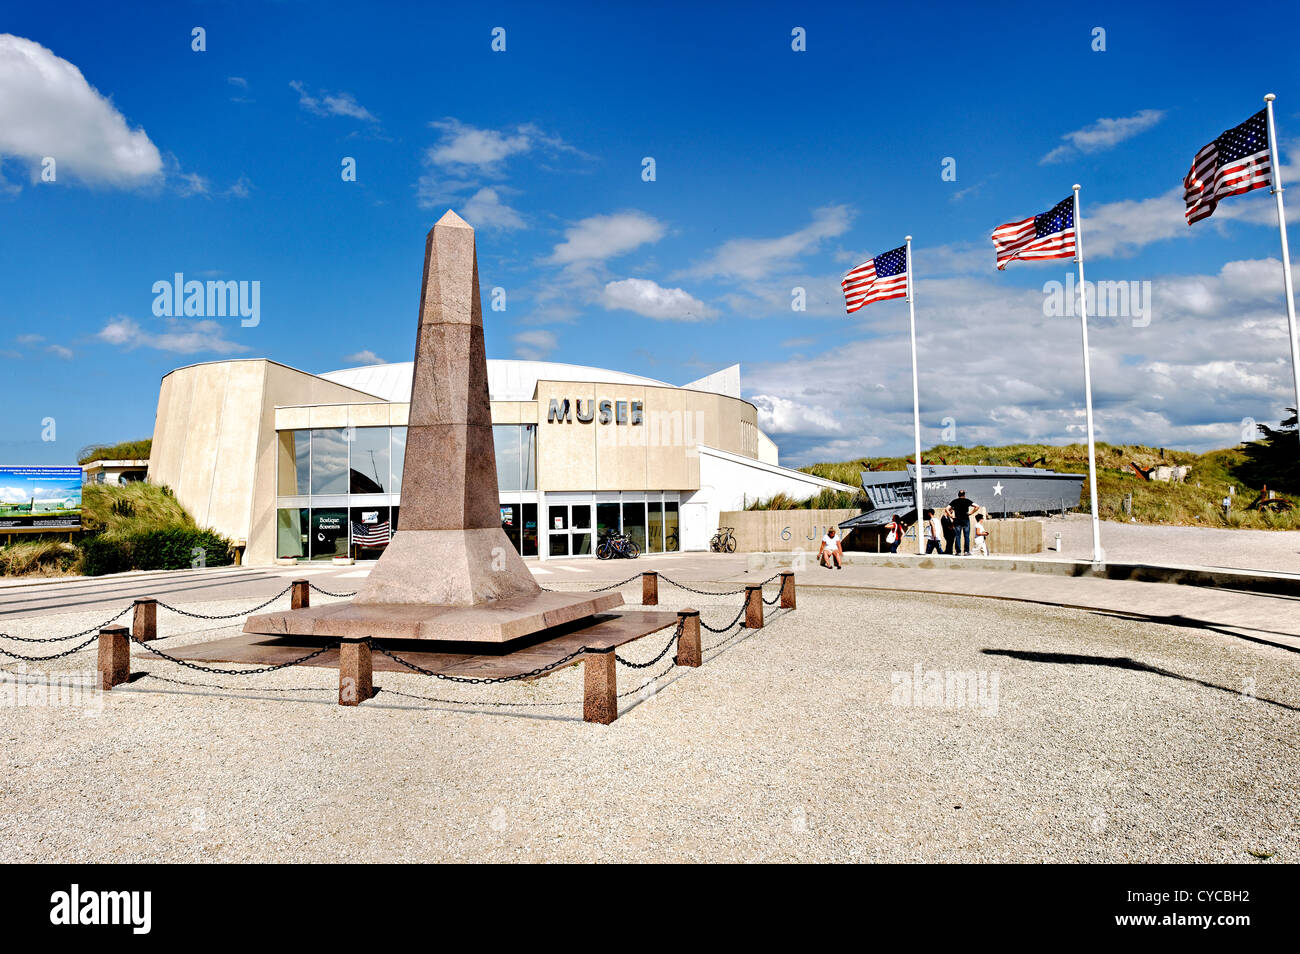 Utah beach memorial, normandy, France. Stock Photo